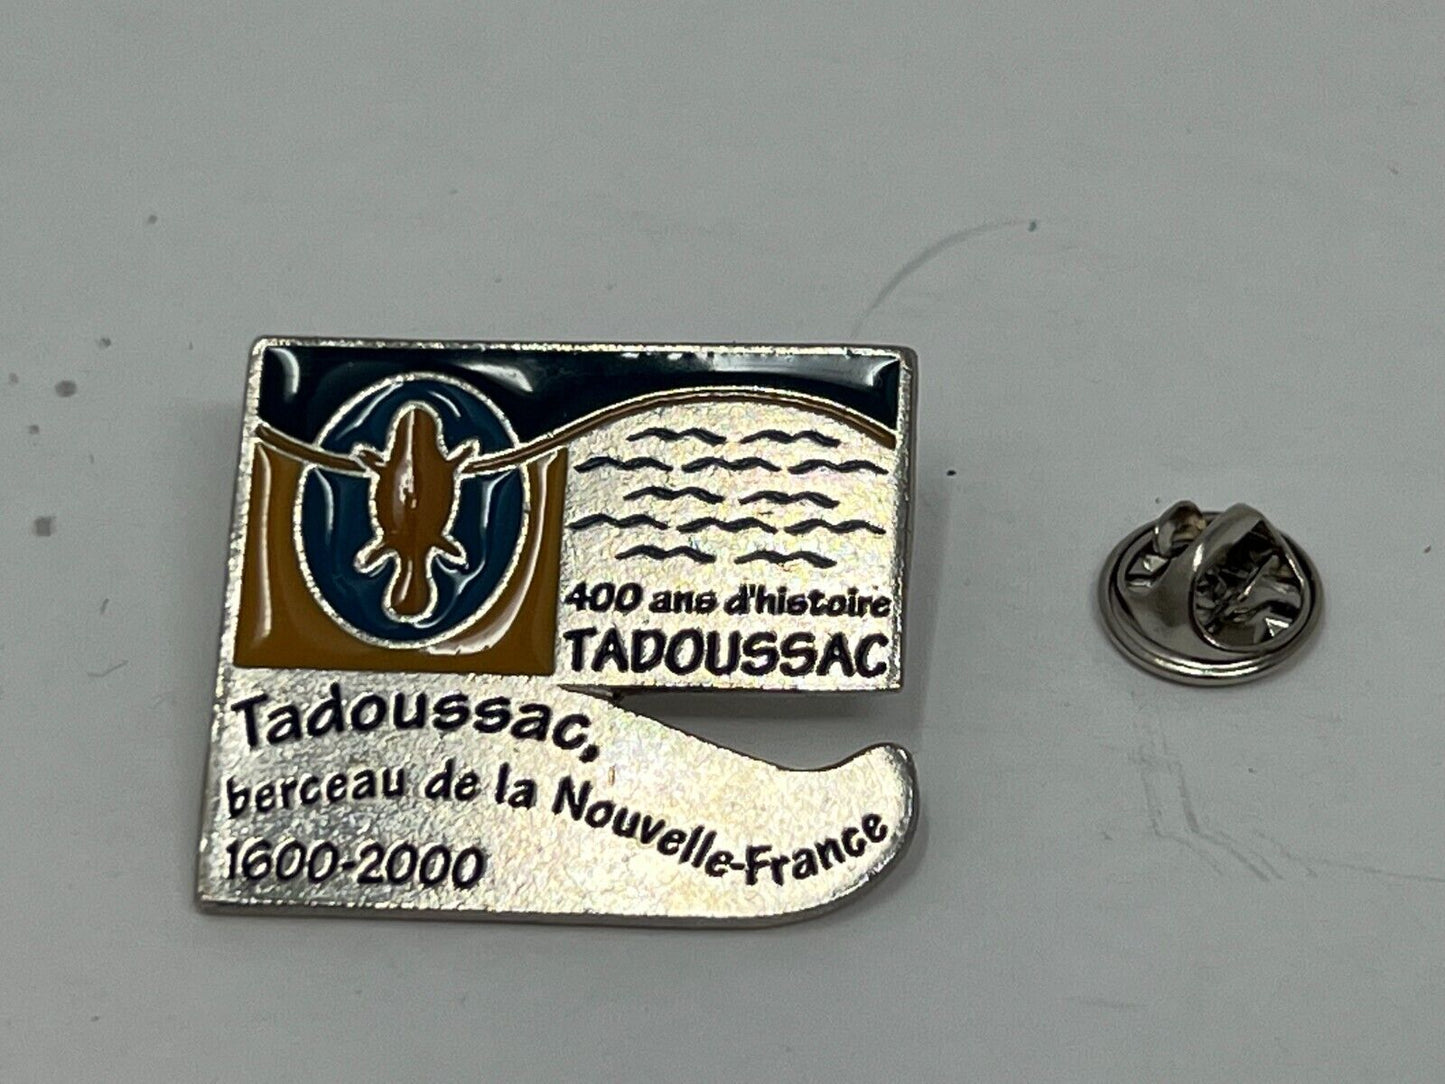 Tadoussac berceau de la Nouvelle-France 1600-2000 Cities & States Lapel Pin P2